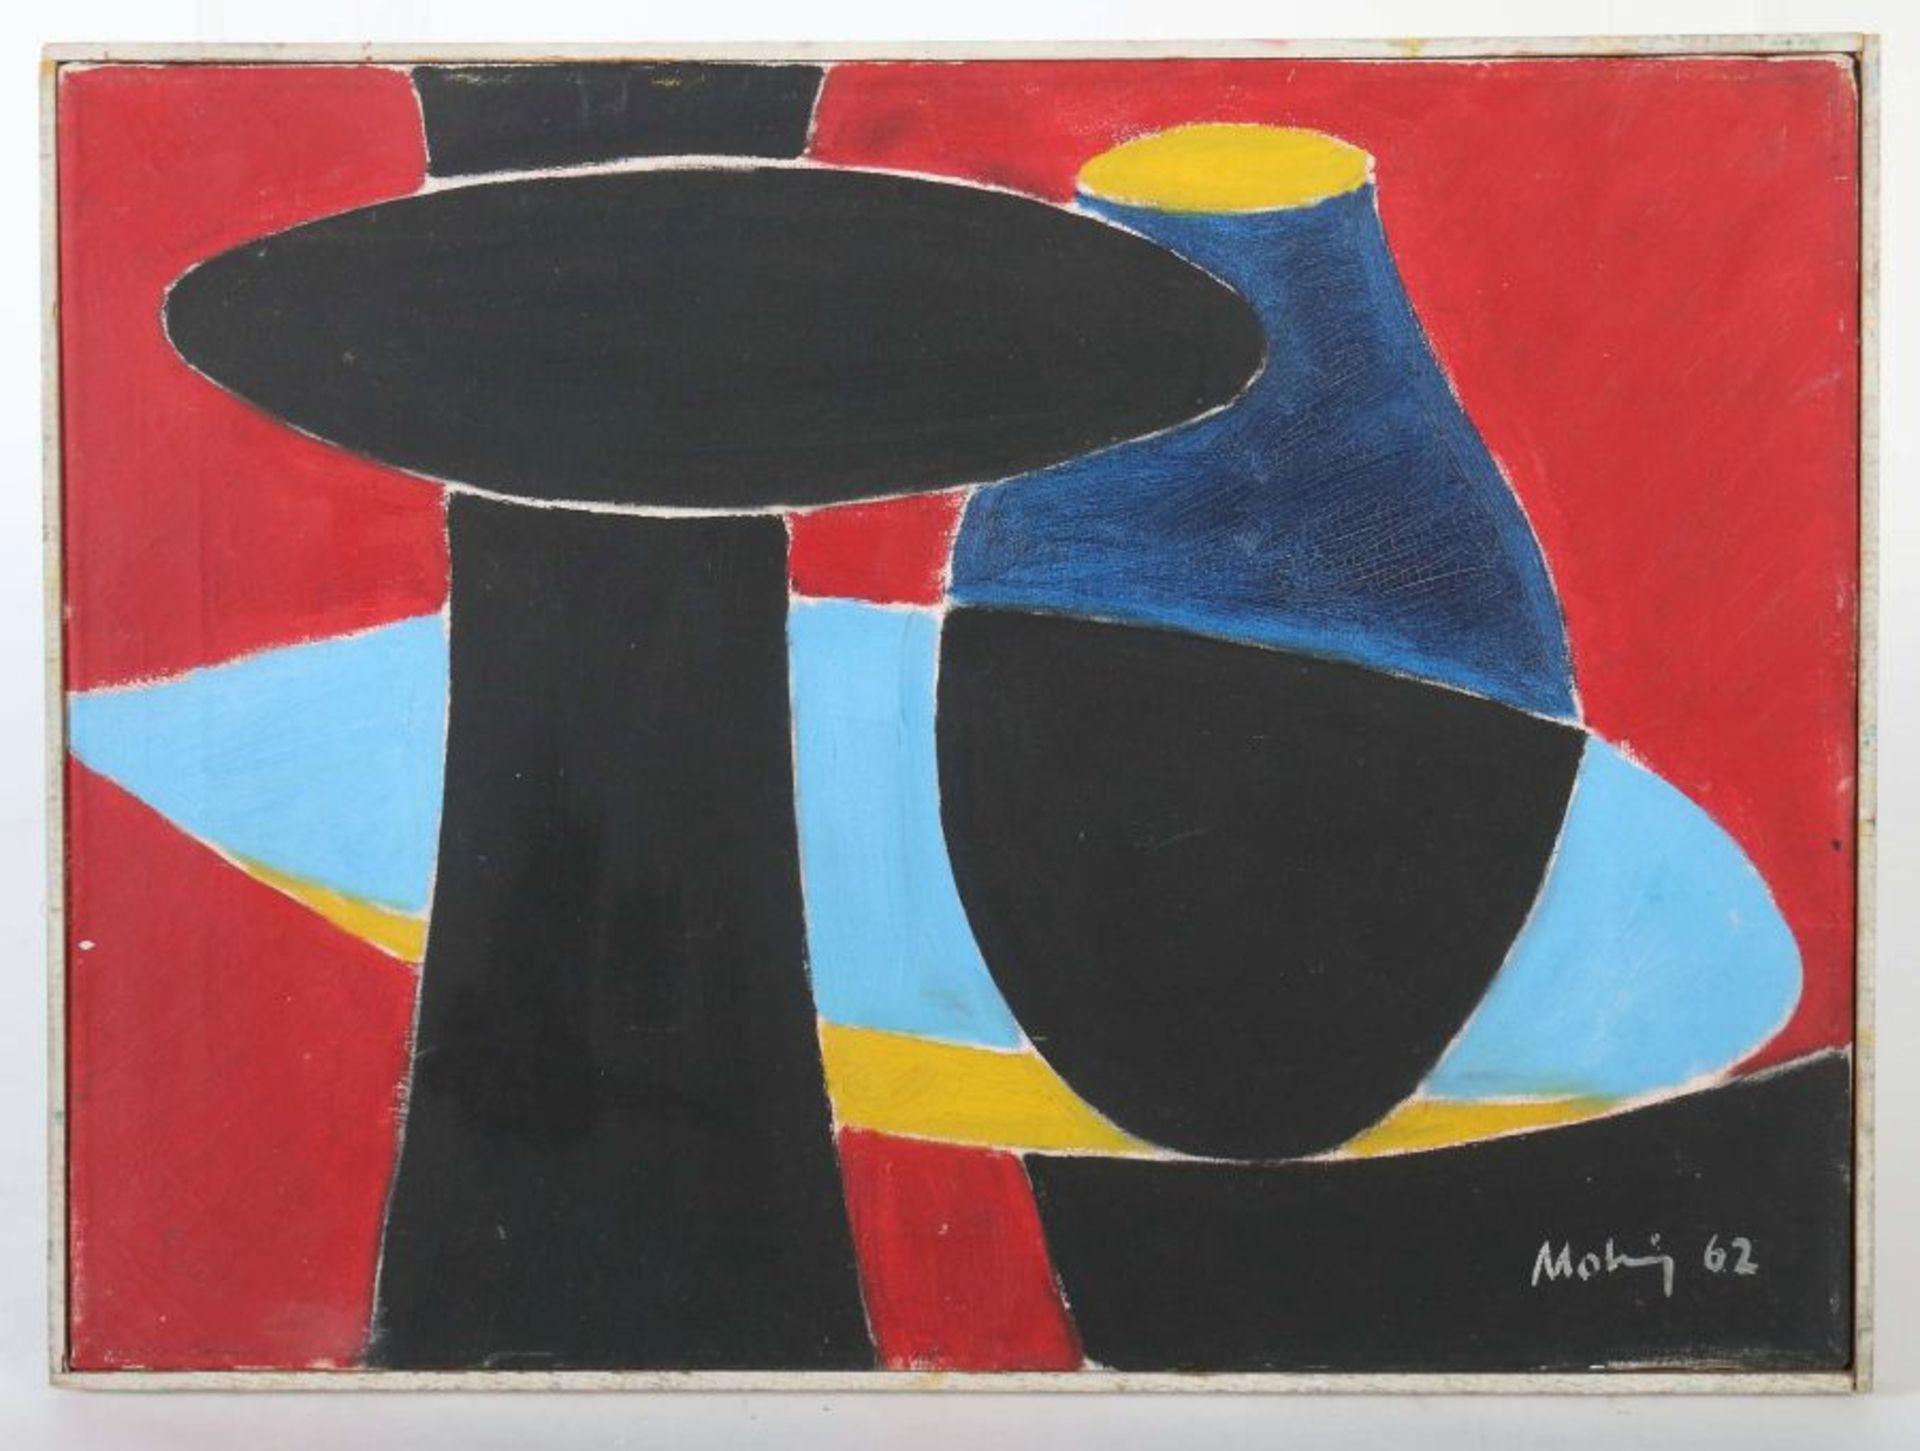 Mohring, Ottmar 1935 - 2015, Bildhauer, Maler und Grafiker in Stuttgart, Stud. an der Akad. - Bild 2 aus 4